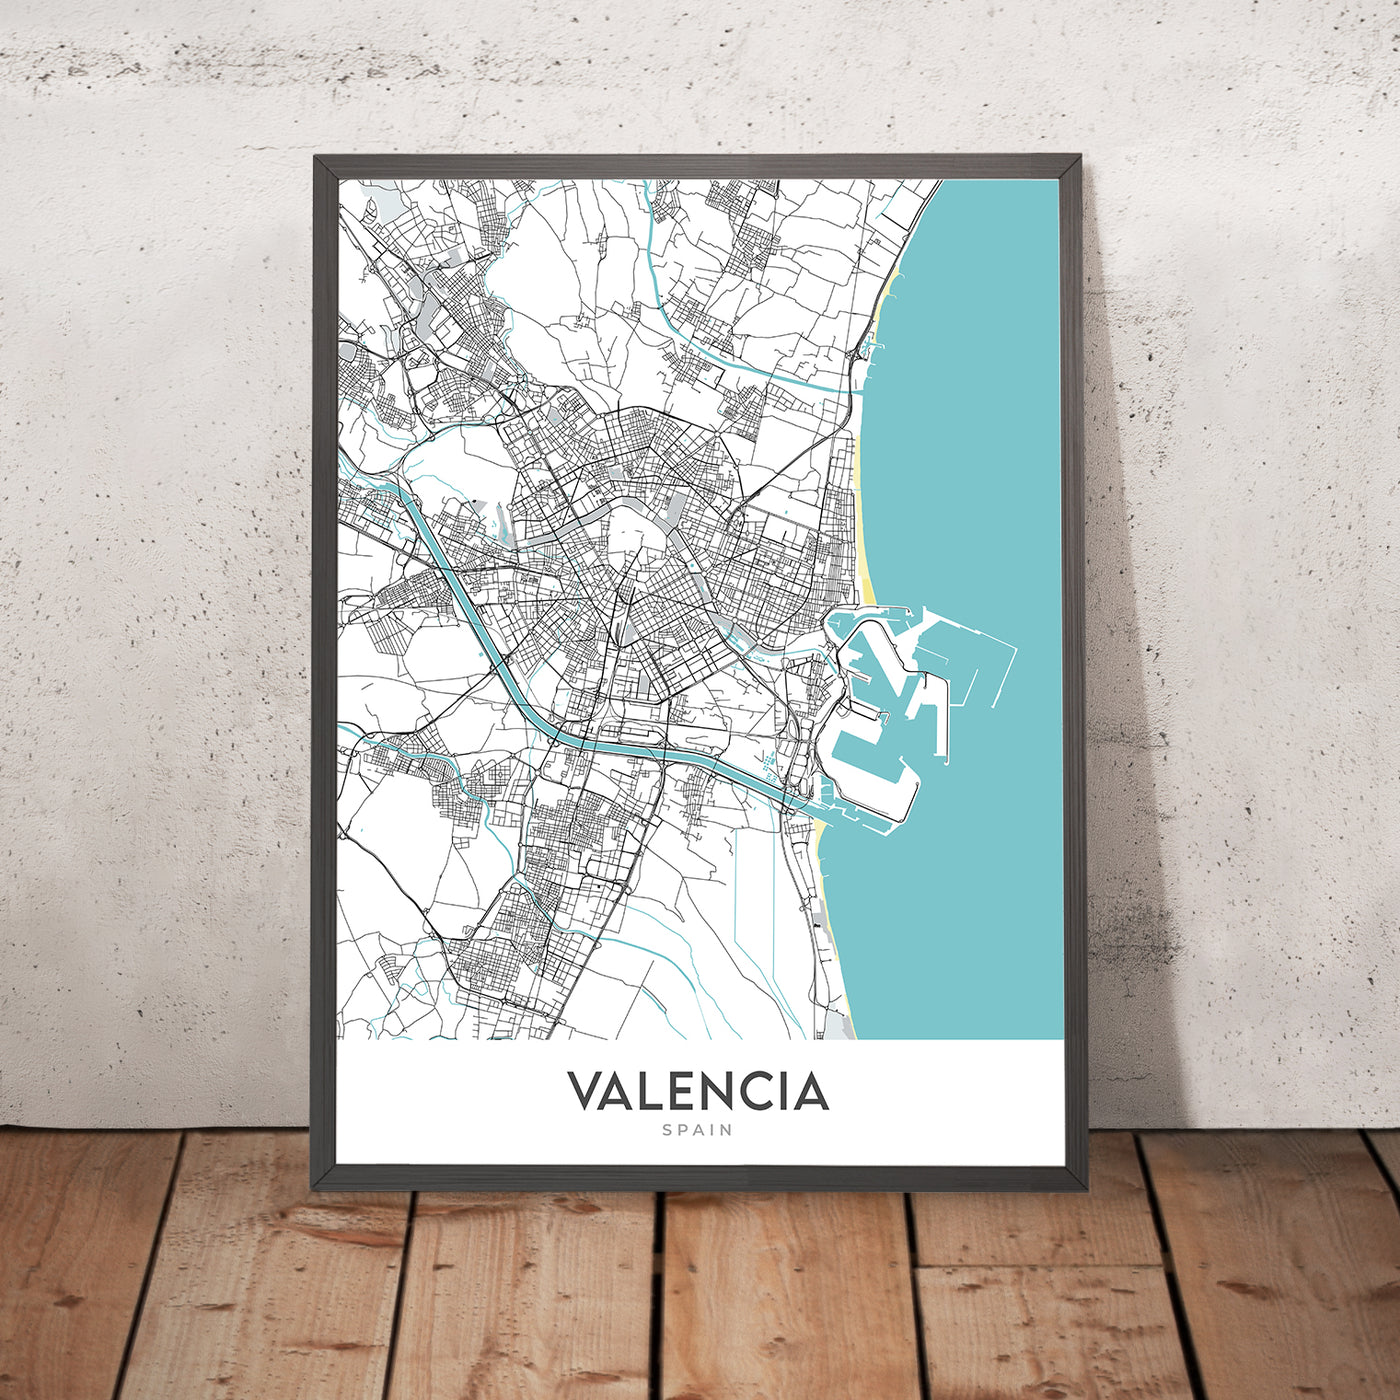 Moderner Stadtplan von Valencia, Spanien: Ciutat Vella, El Carmen, Ruzafa, Stadt der Künste und Wissenschaften, Turia-Gärten